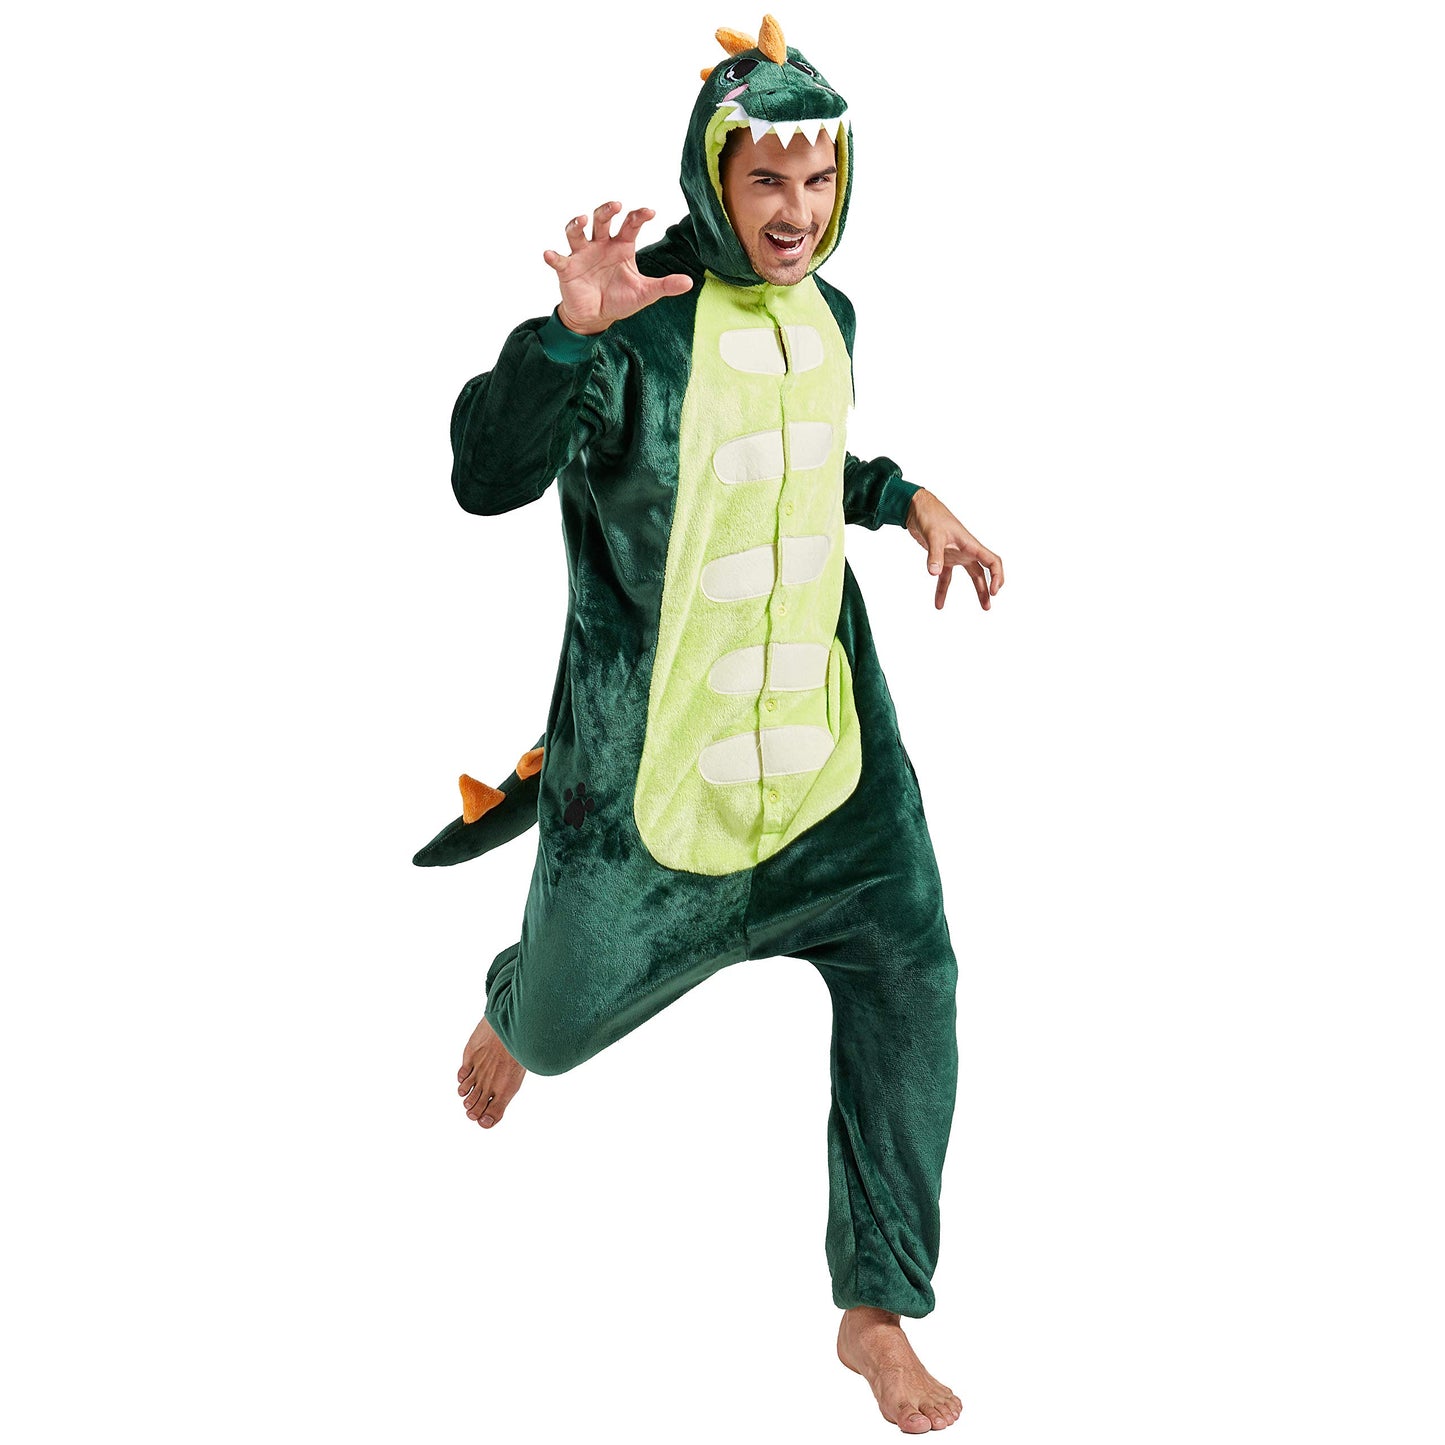 Afoxsos Adult Animal Pajamas Costume - Plush One Piece Cosplay Dinosaur Onesies Costume